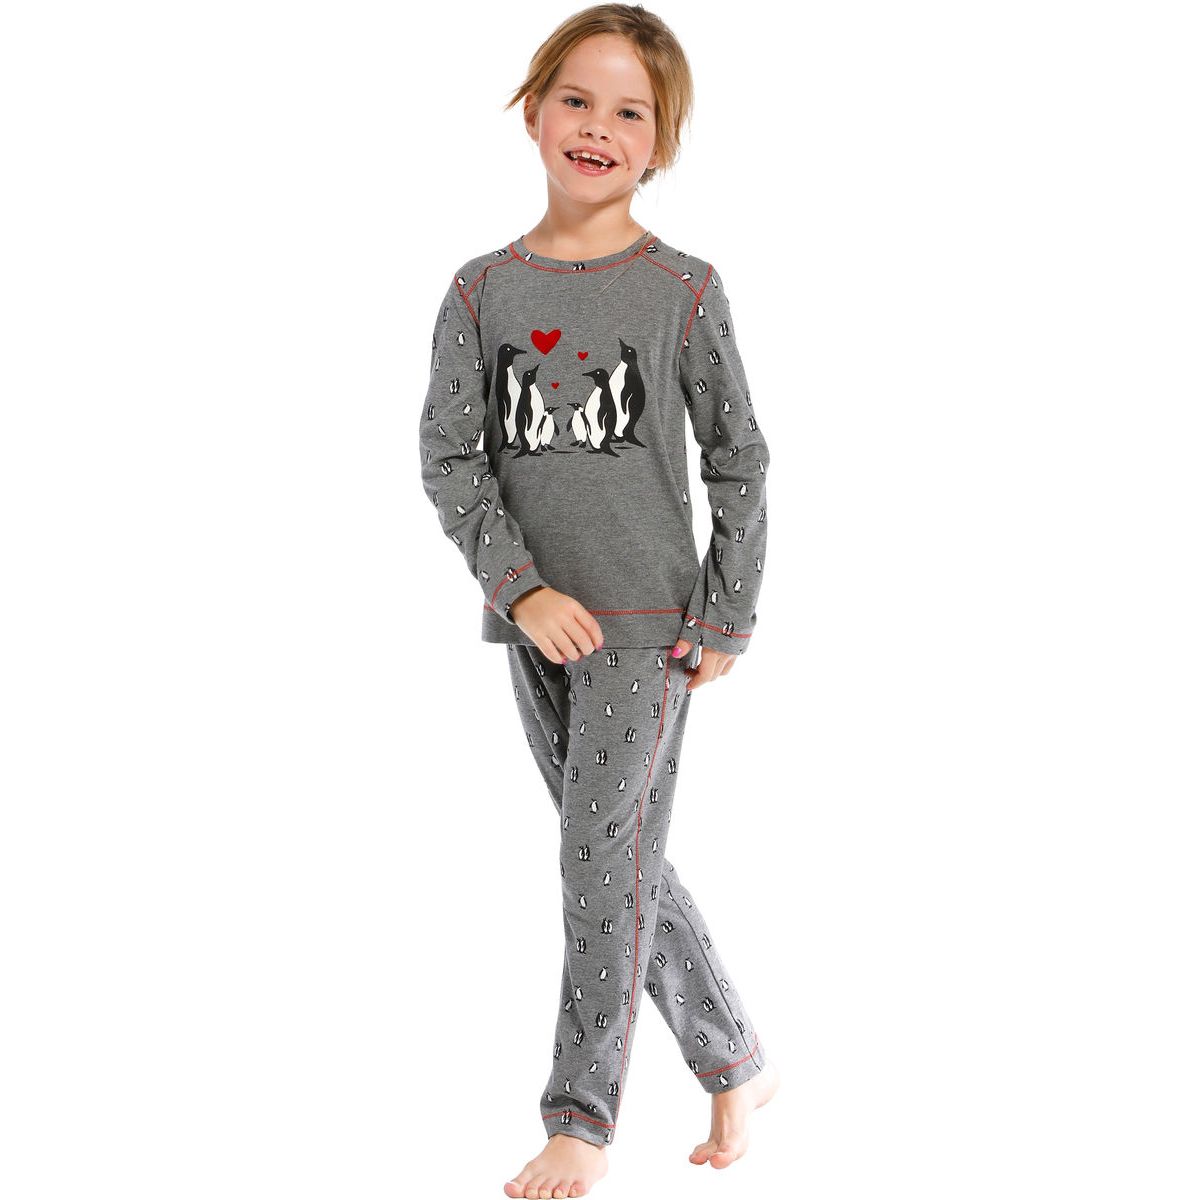 Meisjes pyjama family pinguïn | Gratis verzending en retour | Online de nachthemden, ondermode en meer